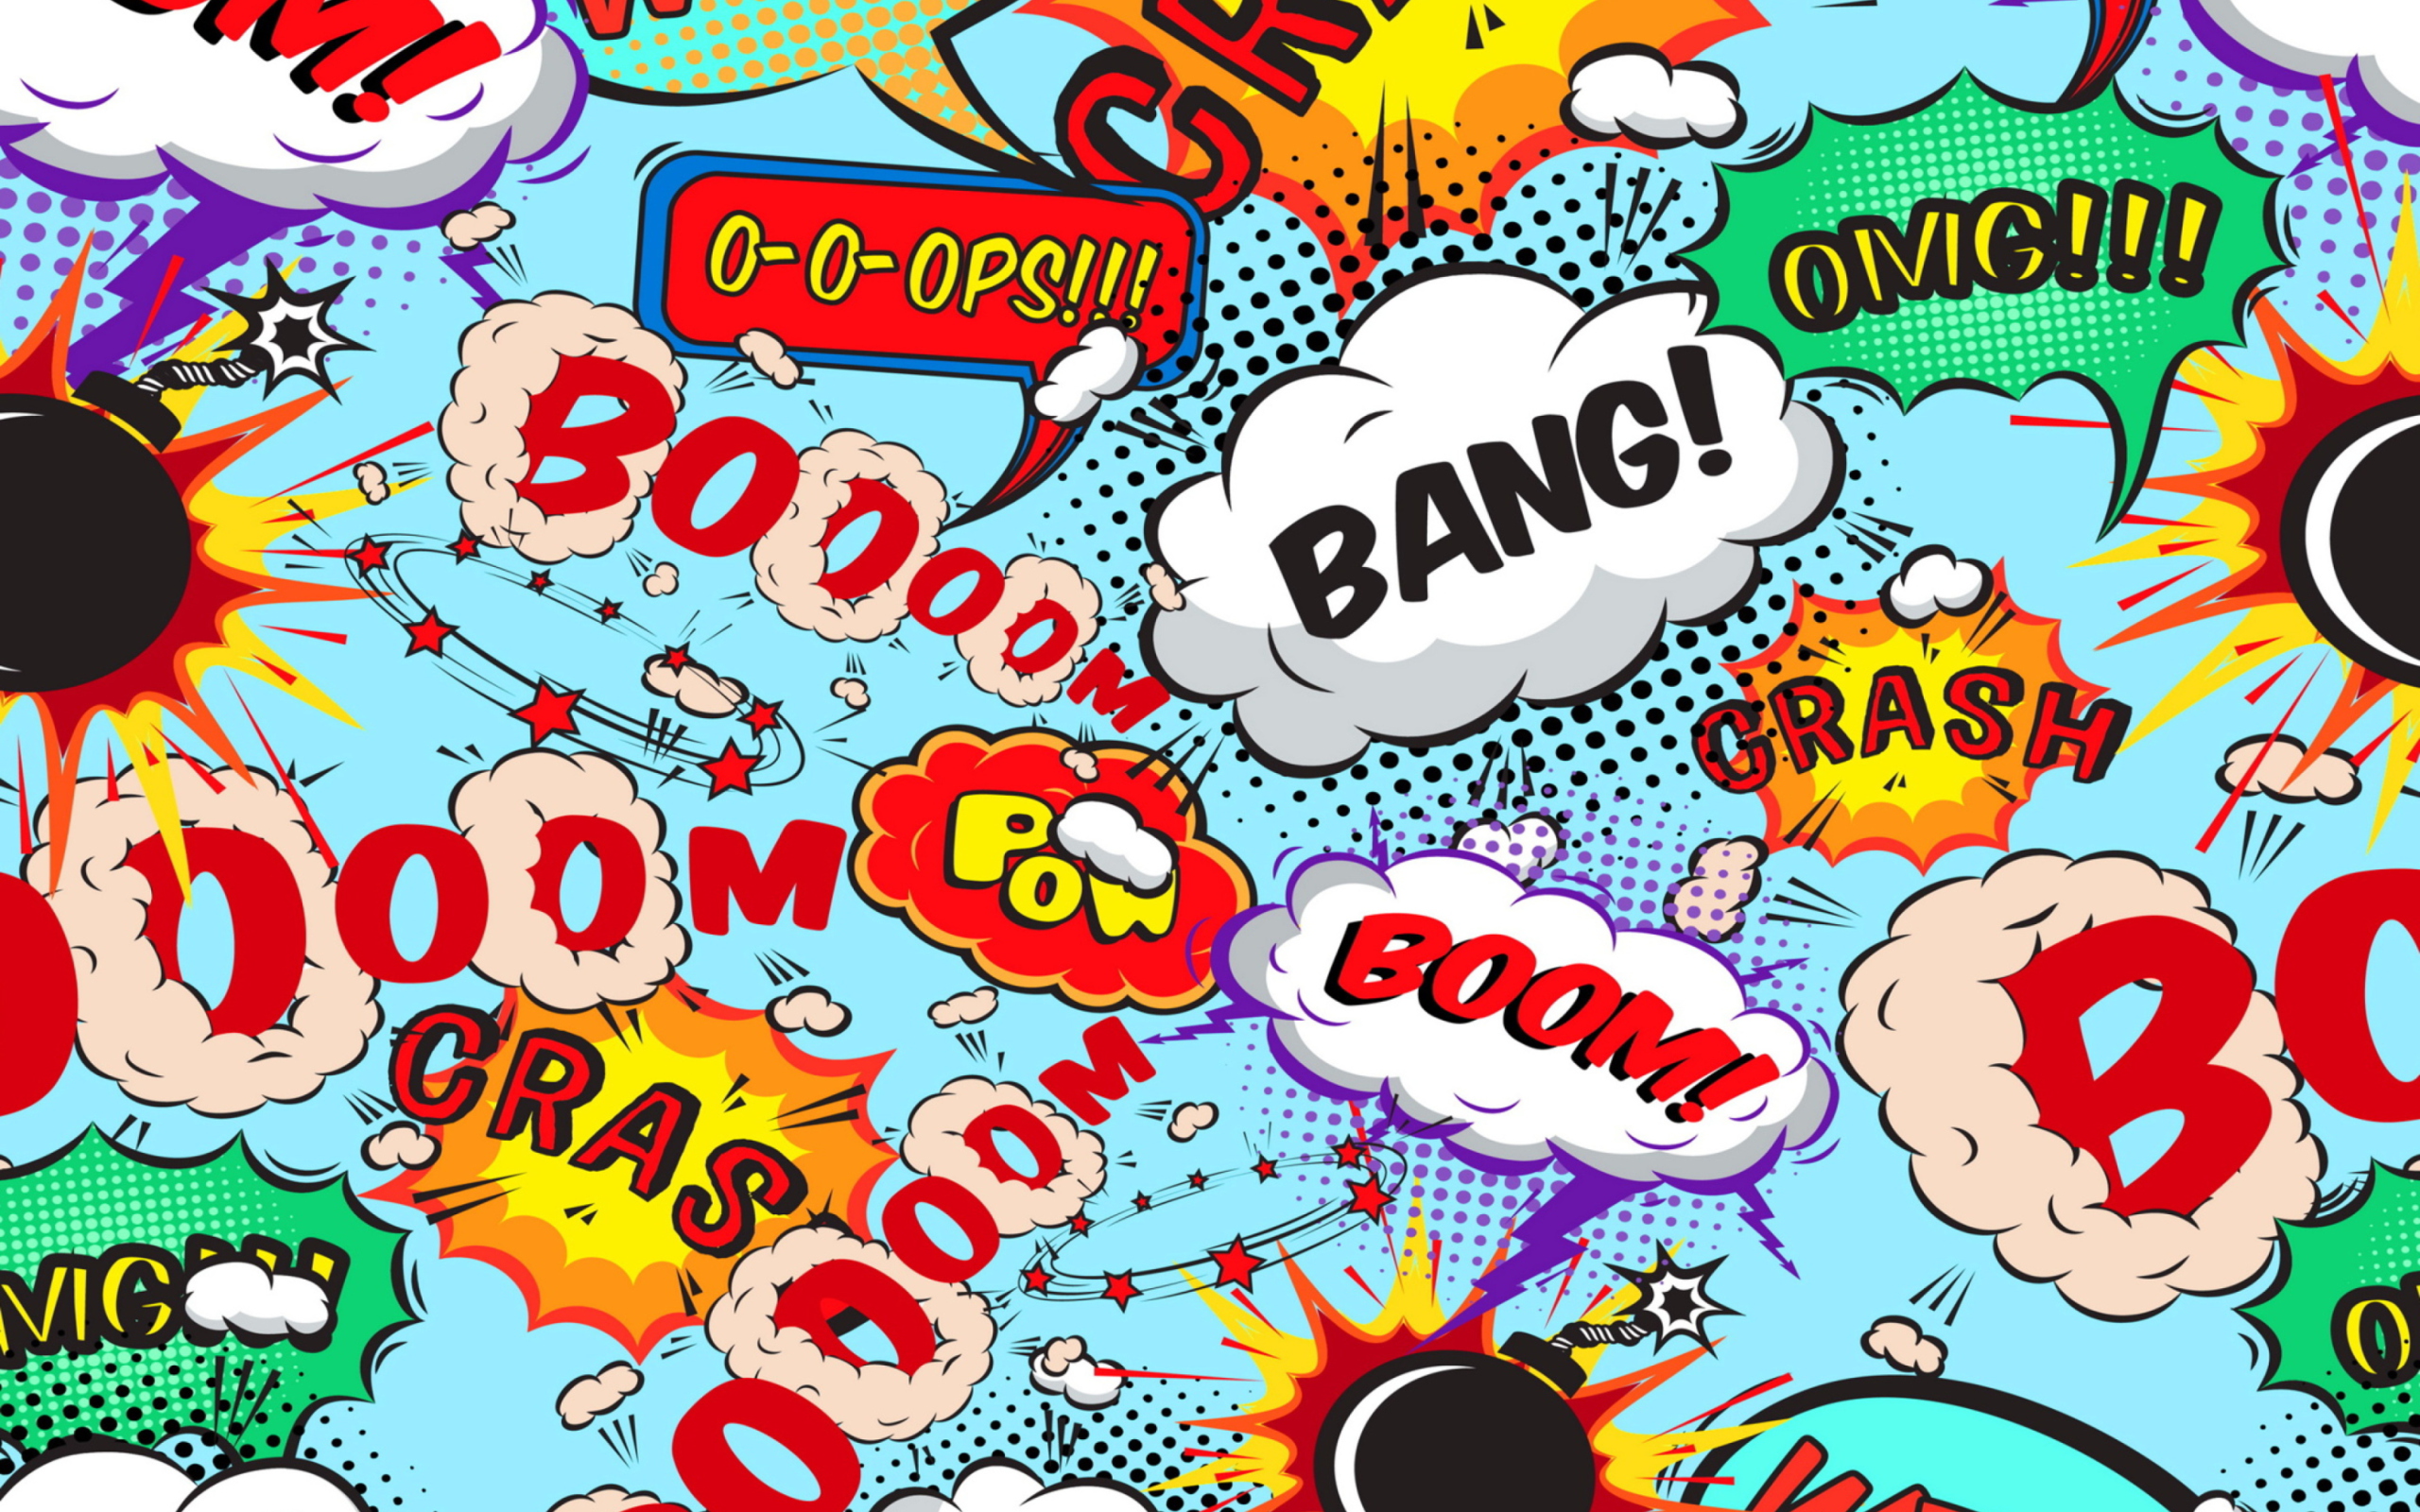 Das Expressions Crash Boom Bang Wallpaper 2560x1600